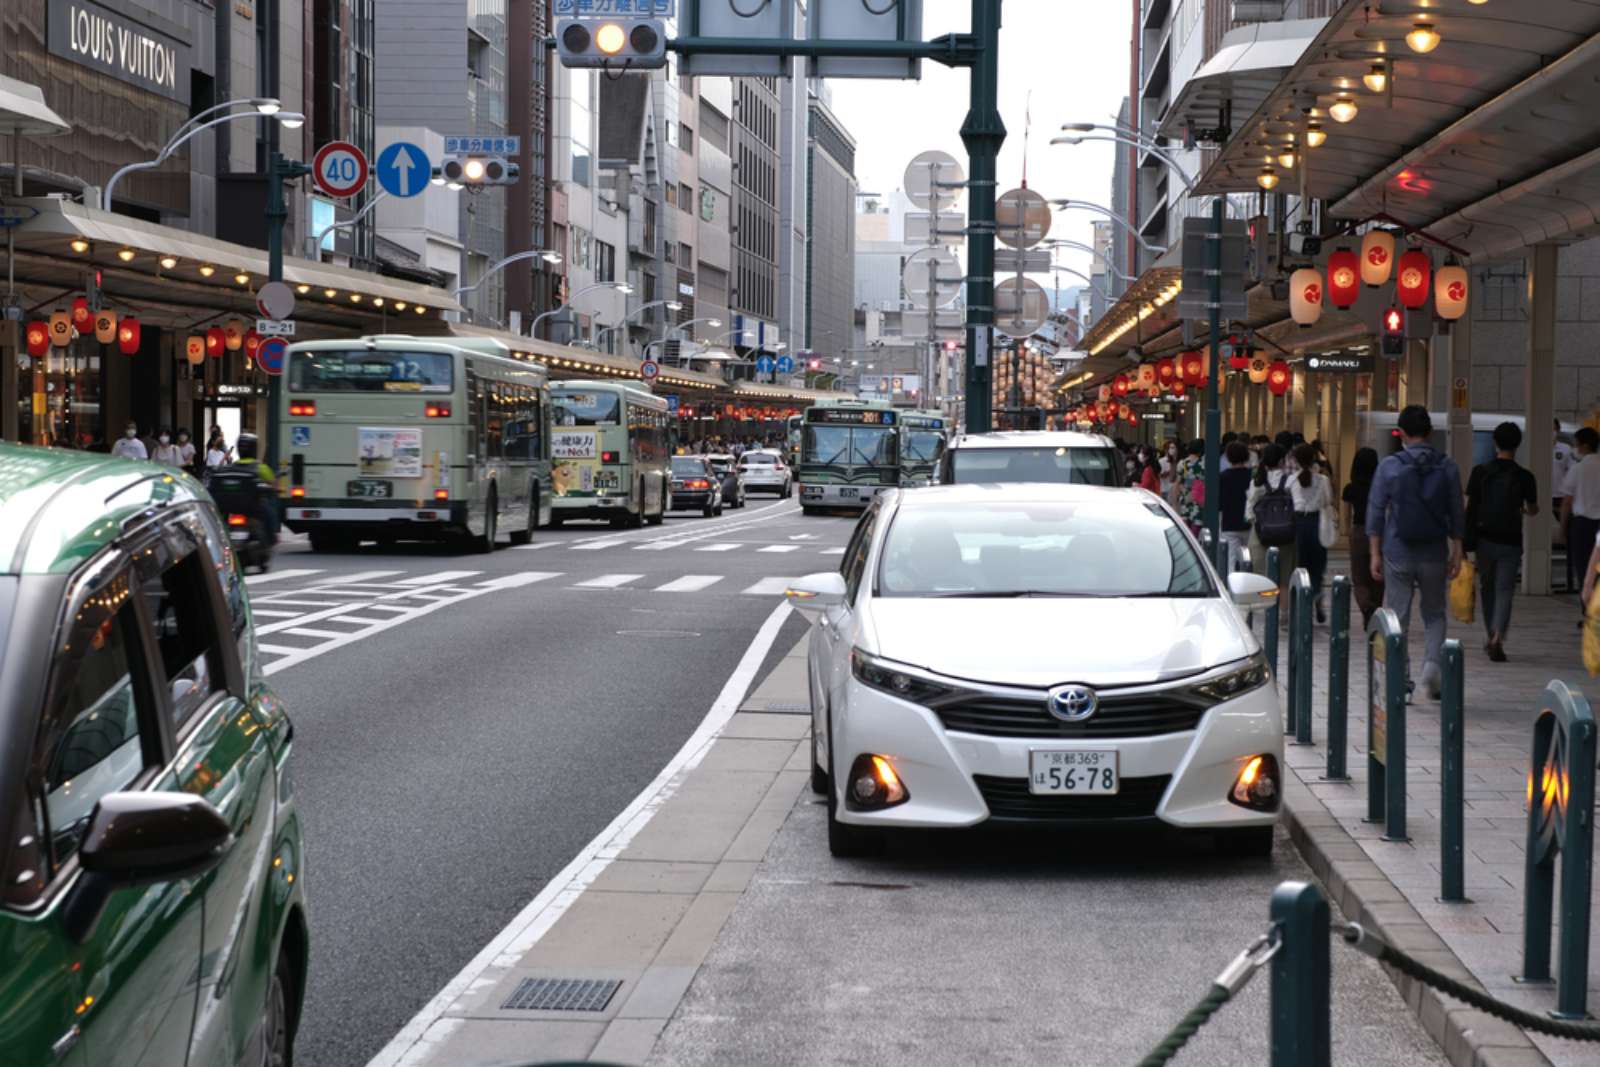 京都-日本-步行城市-四條通-人本運輸-交通-社會實驗-行人-城市規劃-車輛臨停彎-標線-路面顏色-交通政策